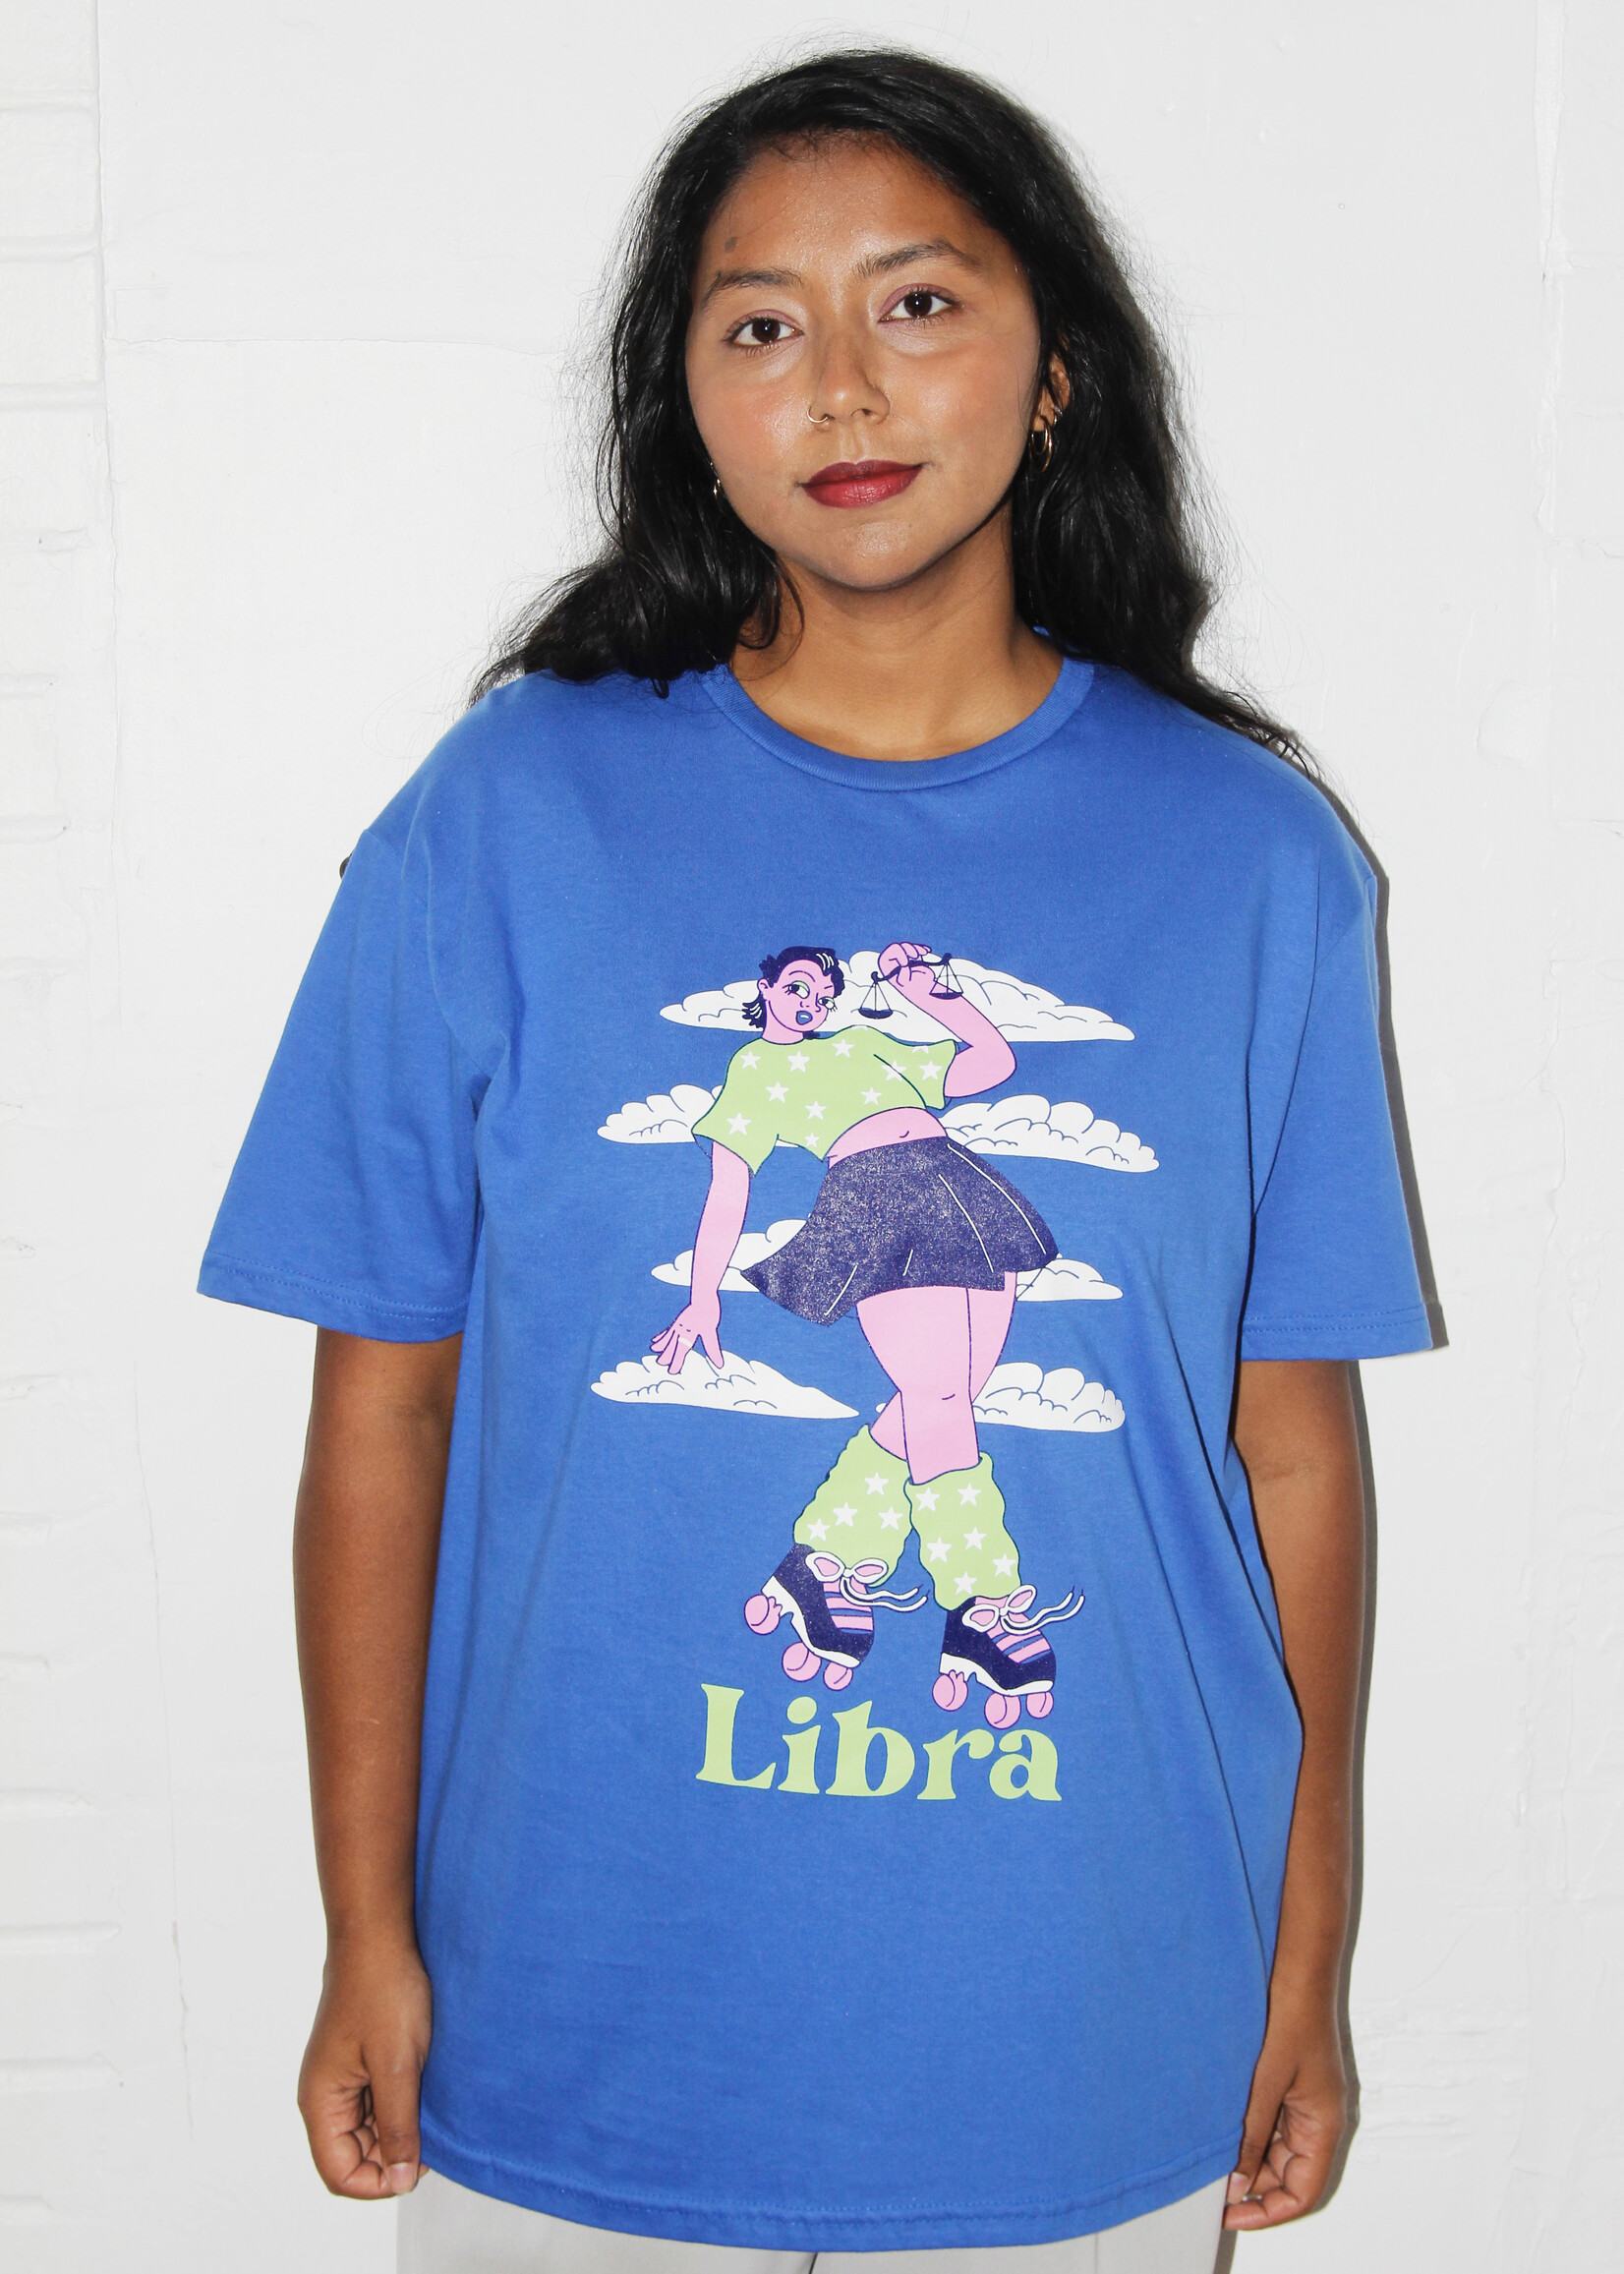 Spll Girl Spll Girl Zodiac T-Shirts: Libra